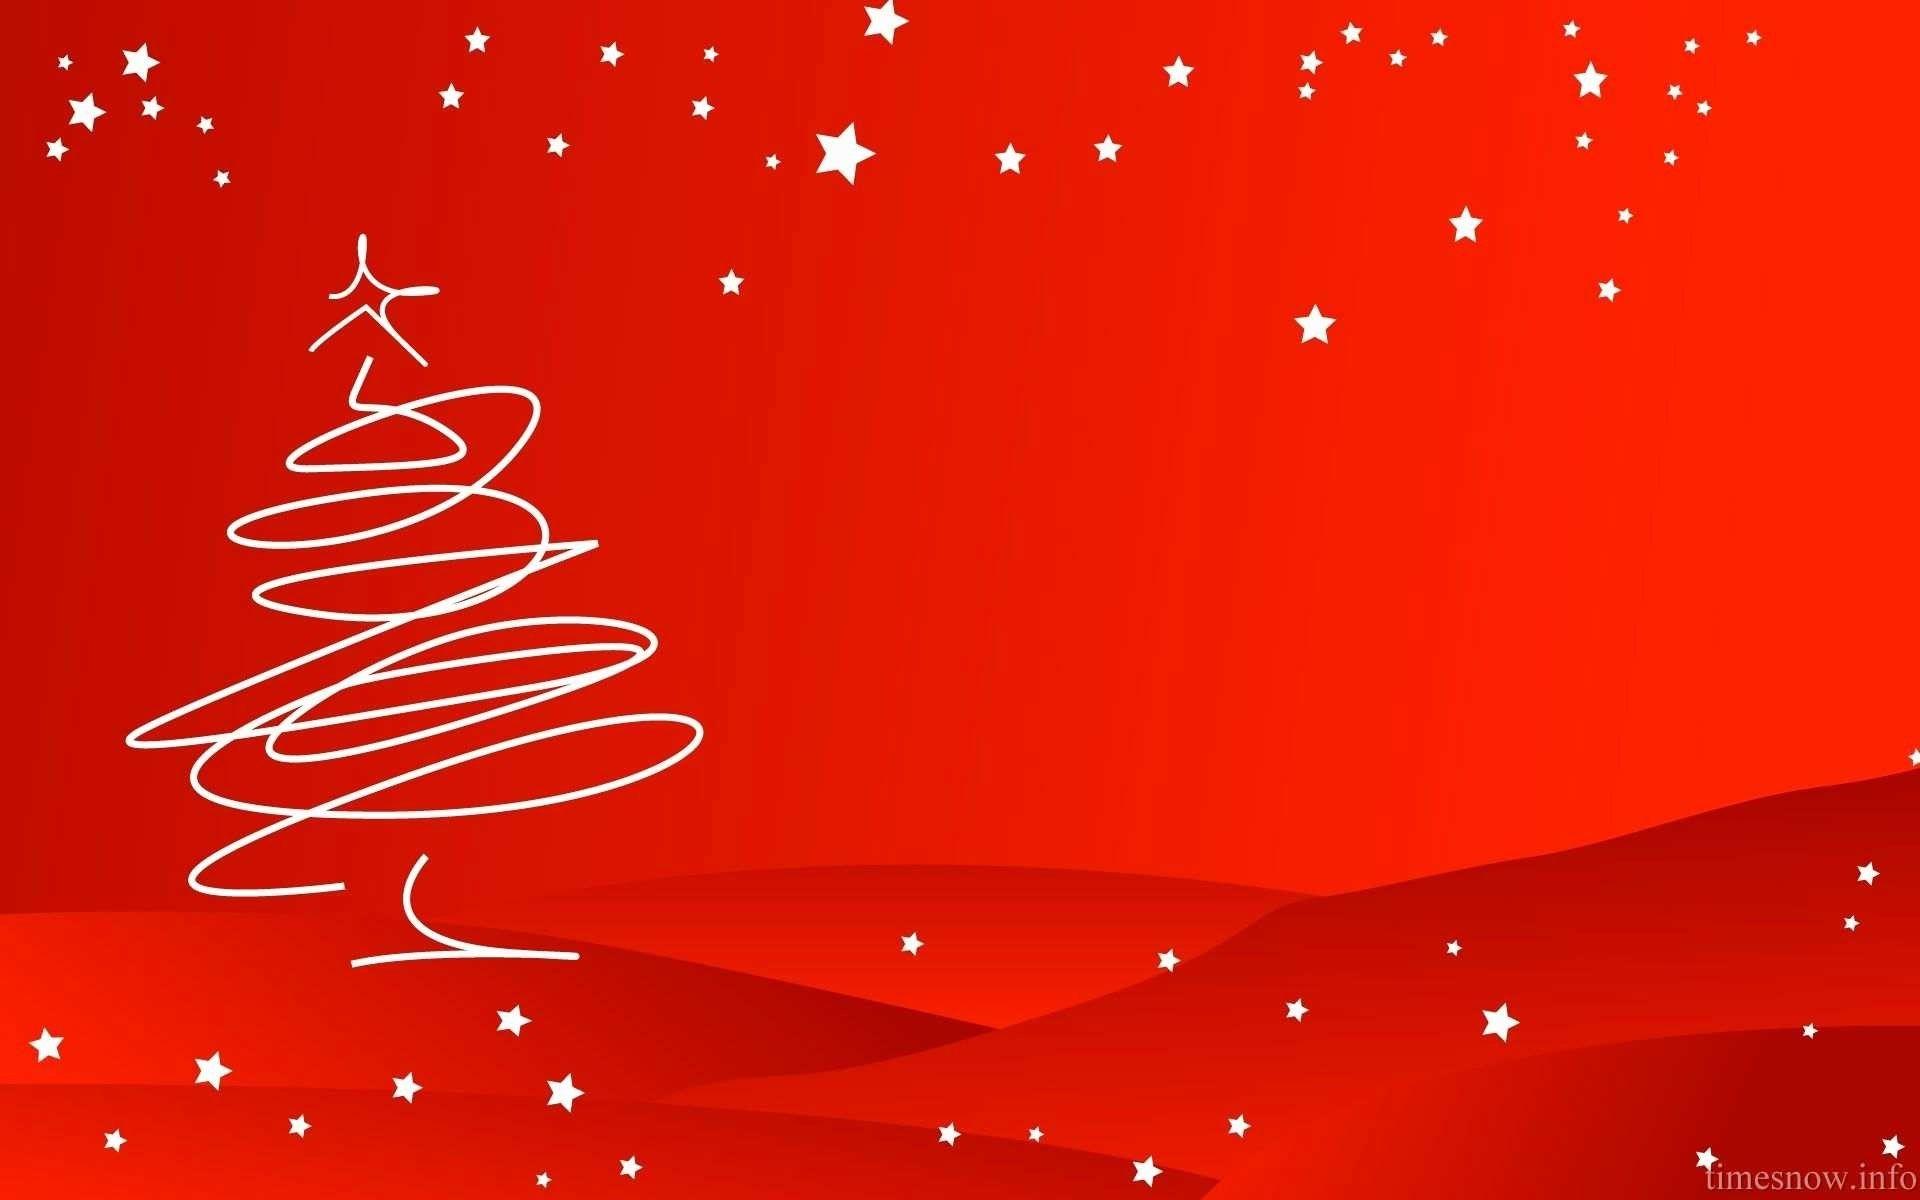 Hình nền Giáng Sinh đỏ là lựa chọn hoàn hảo để trang trí cho chiếc điện thoại và máy tính của bạn trong mùa lễ hội. Top những hình ảnh đẹp nhất sẽ mang đến cho bạn cảm giác đắm chìm trong không khí Giáng Sinh sôi động và đầy màu sắc.